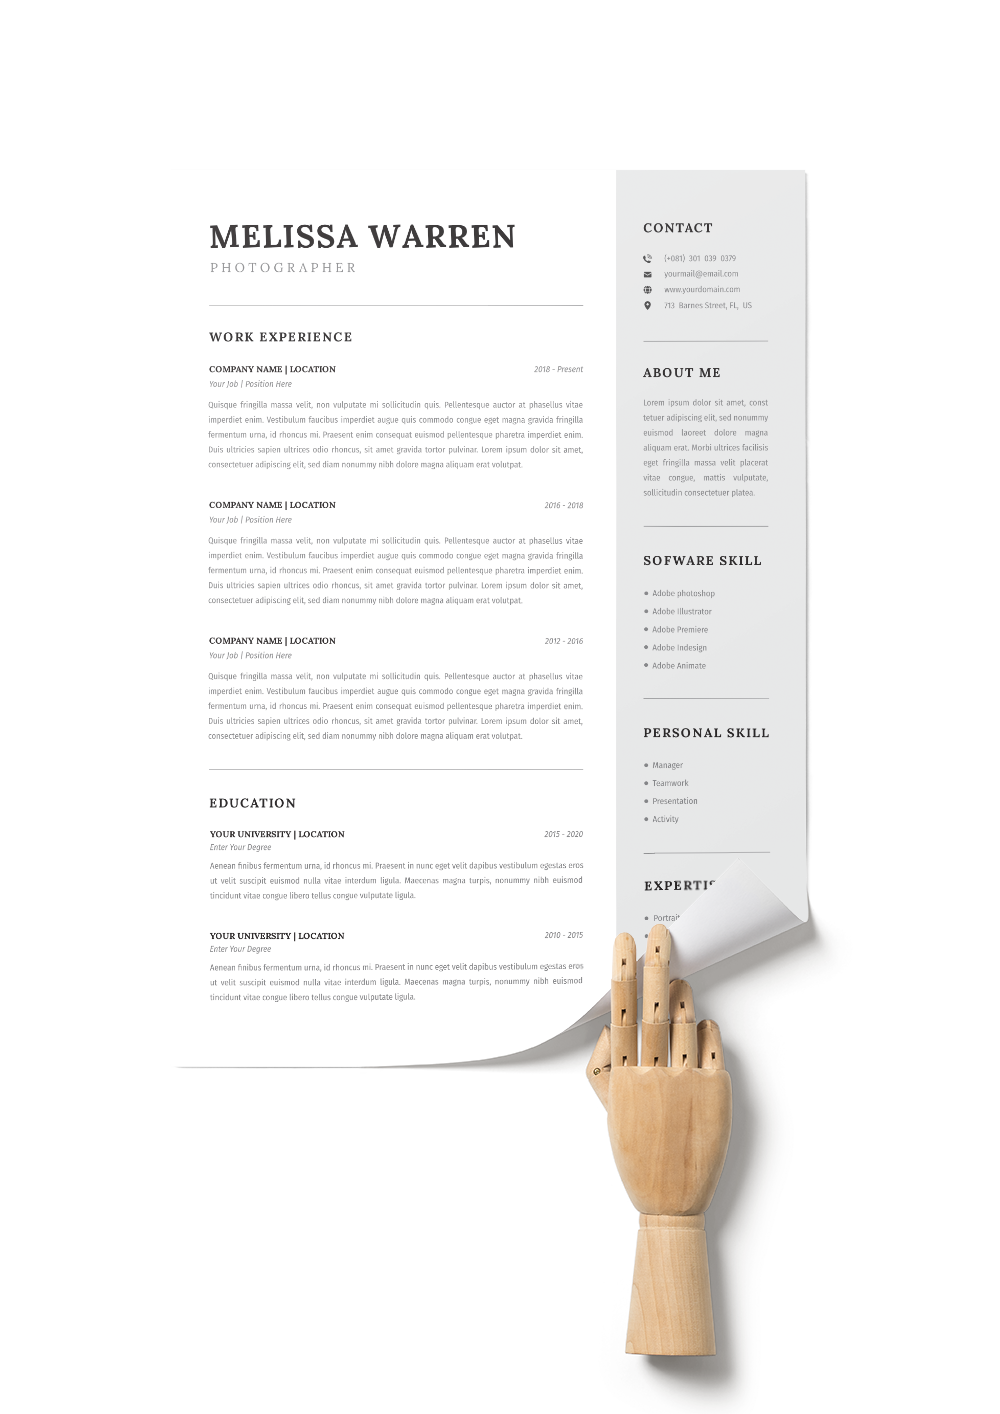 CV #45 Melissa Warren